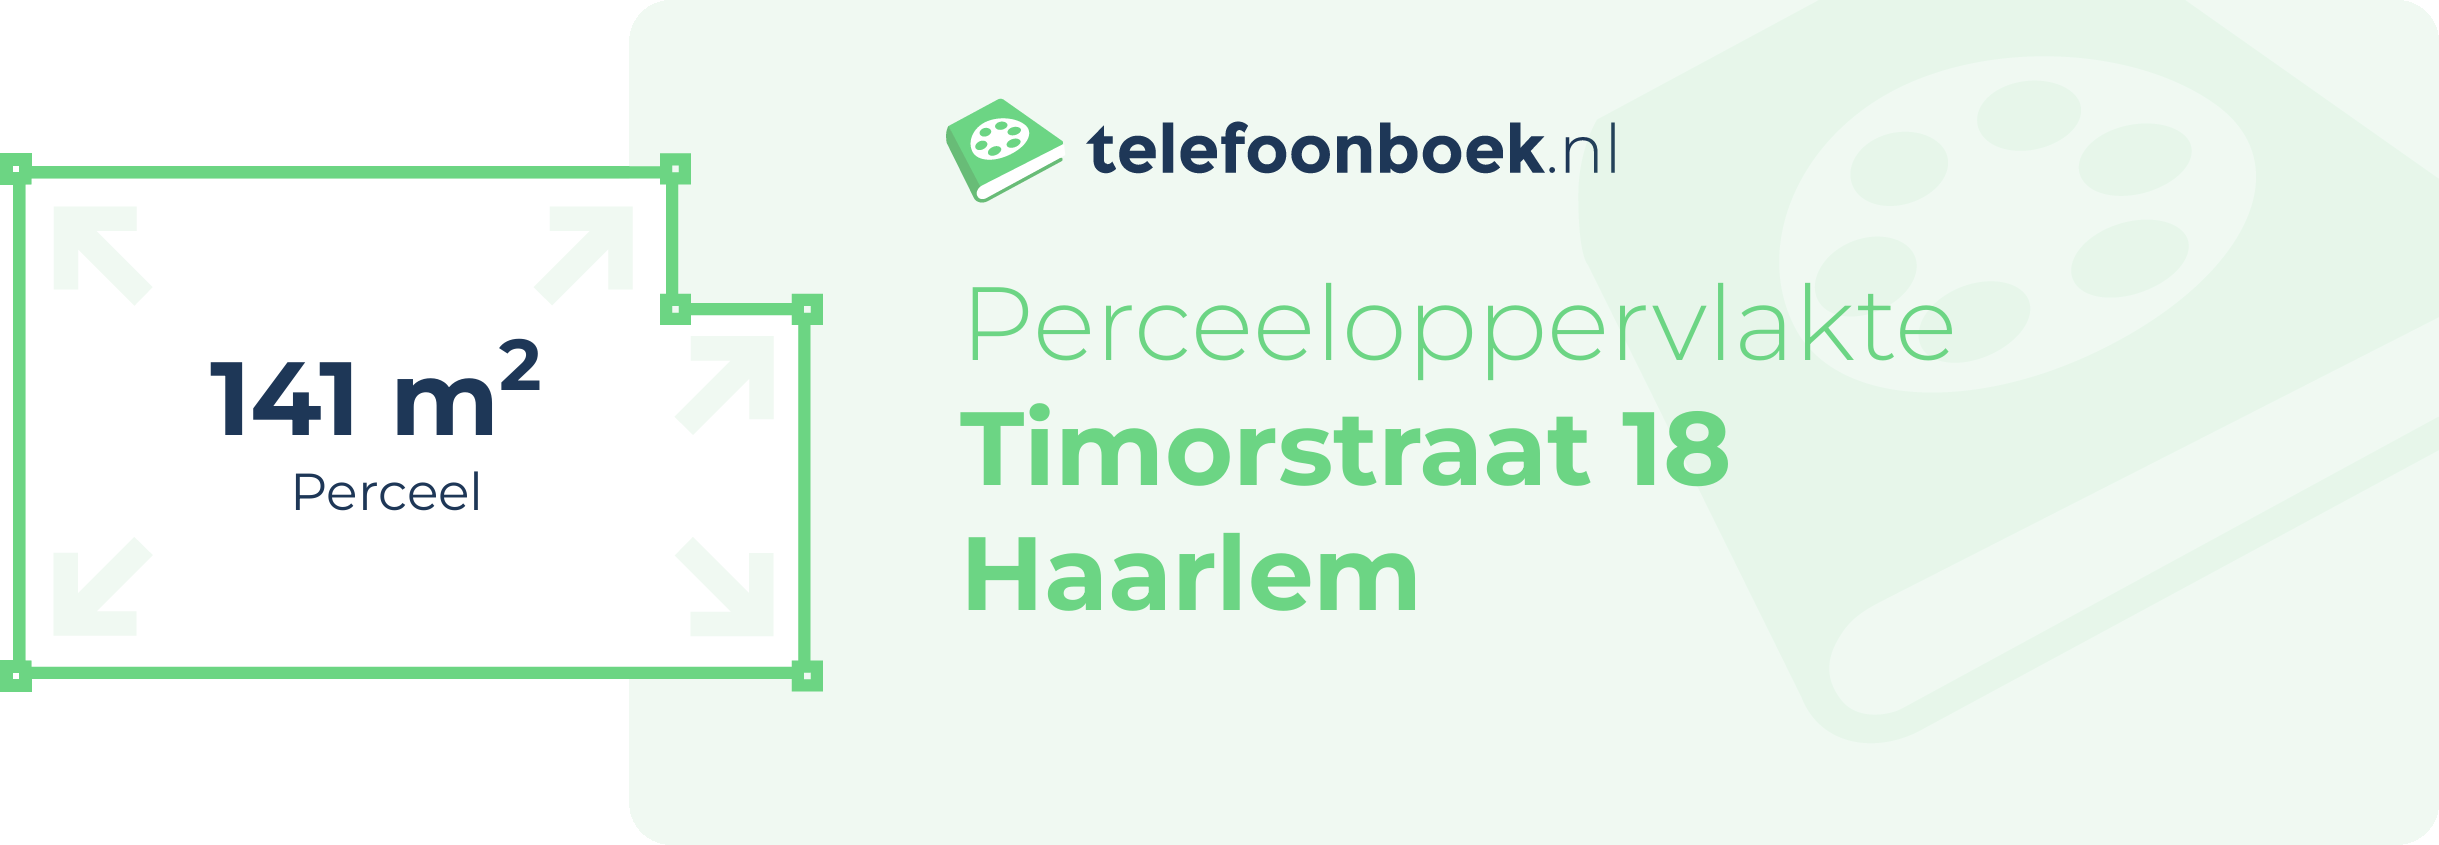 Perceeloppervlakte Timorstraat 18 Haarlem